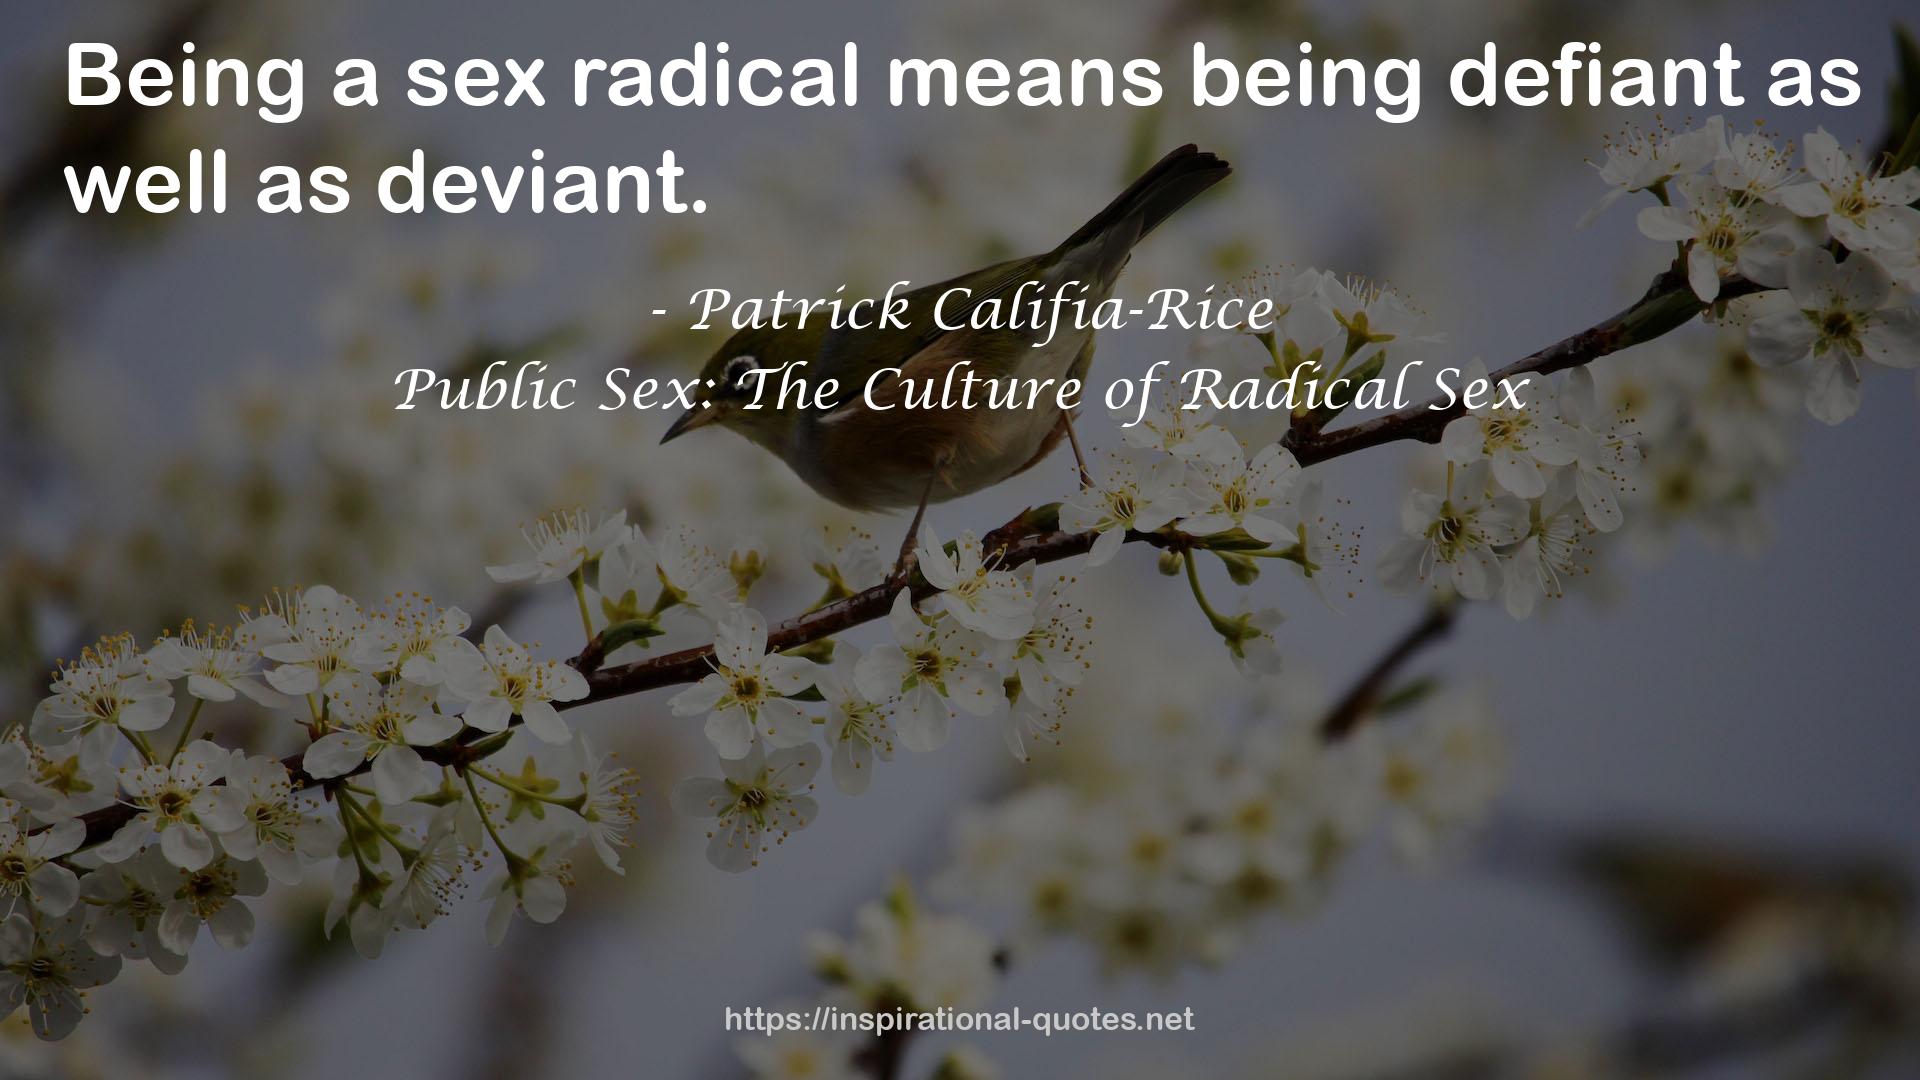 Public Sex: The Culture of Radical Sex QUOTES